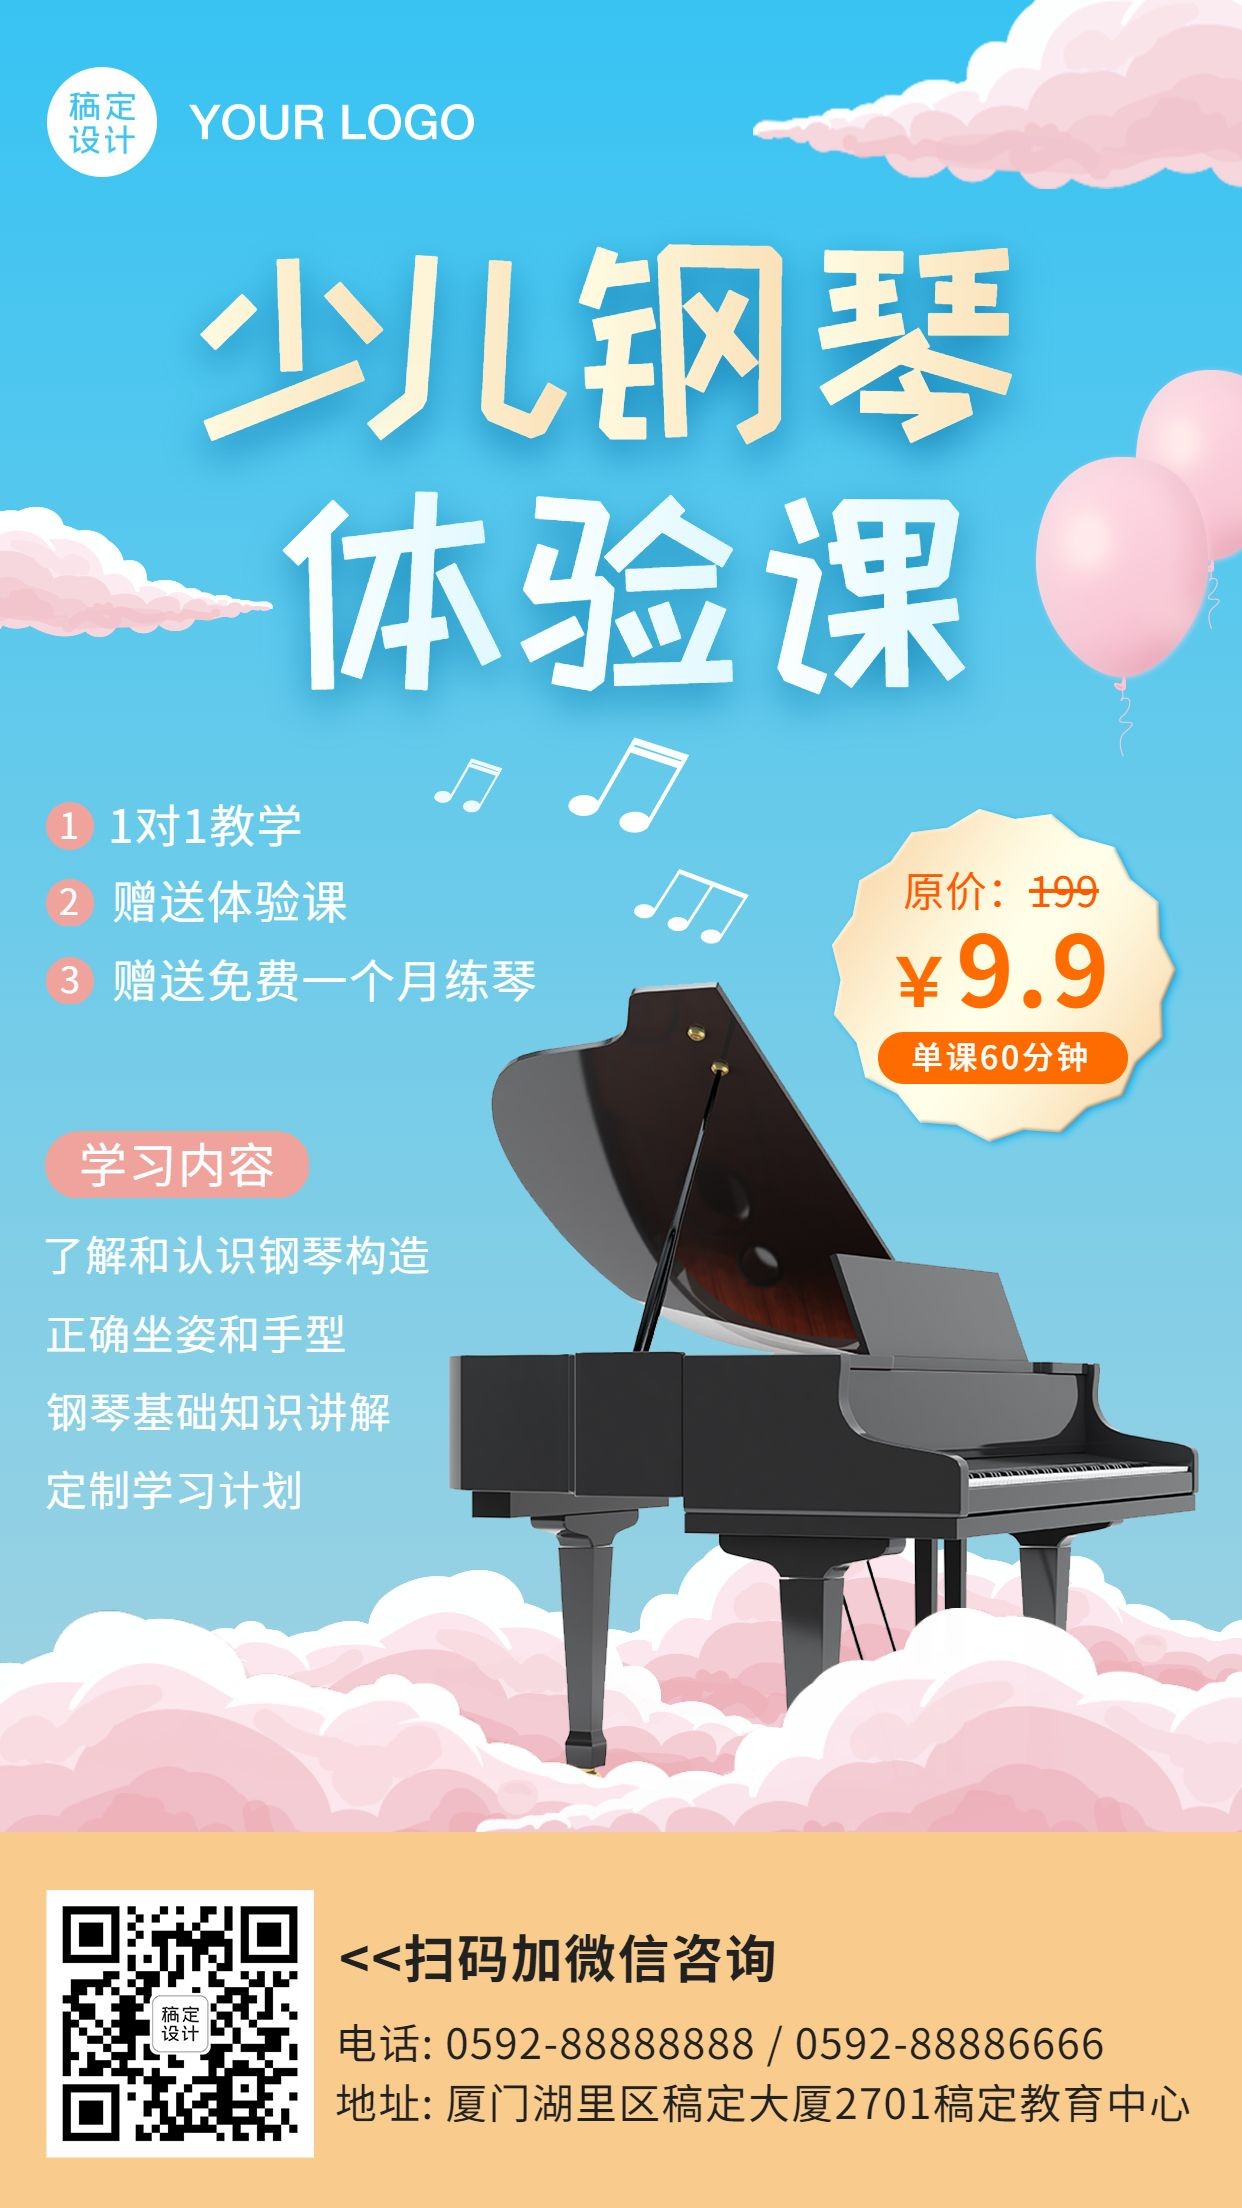 早幼教少儿钢琴课程招生海报预览效果